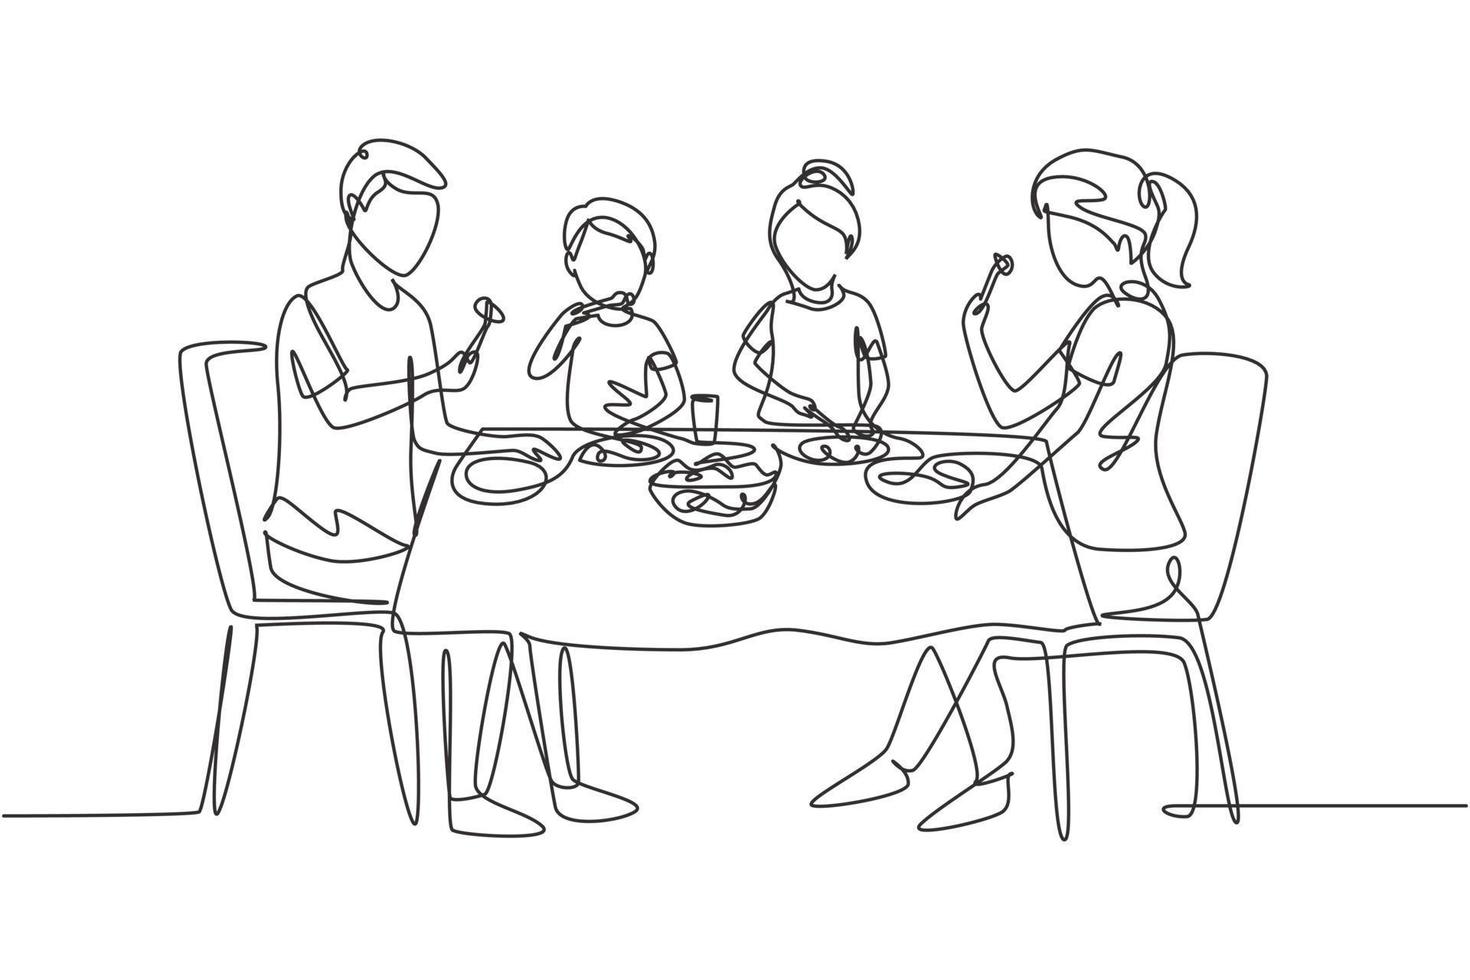 kontinuerlig en rad ritning diner föräldrar och barn tillsammans. familjen äter runt köksbordet. glad pappa, mamma och barn som sitter och äter. enda rad rita design vektorgrafisk illustration vektor